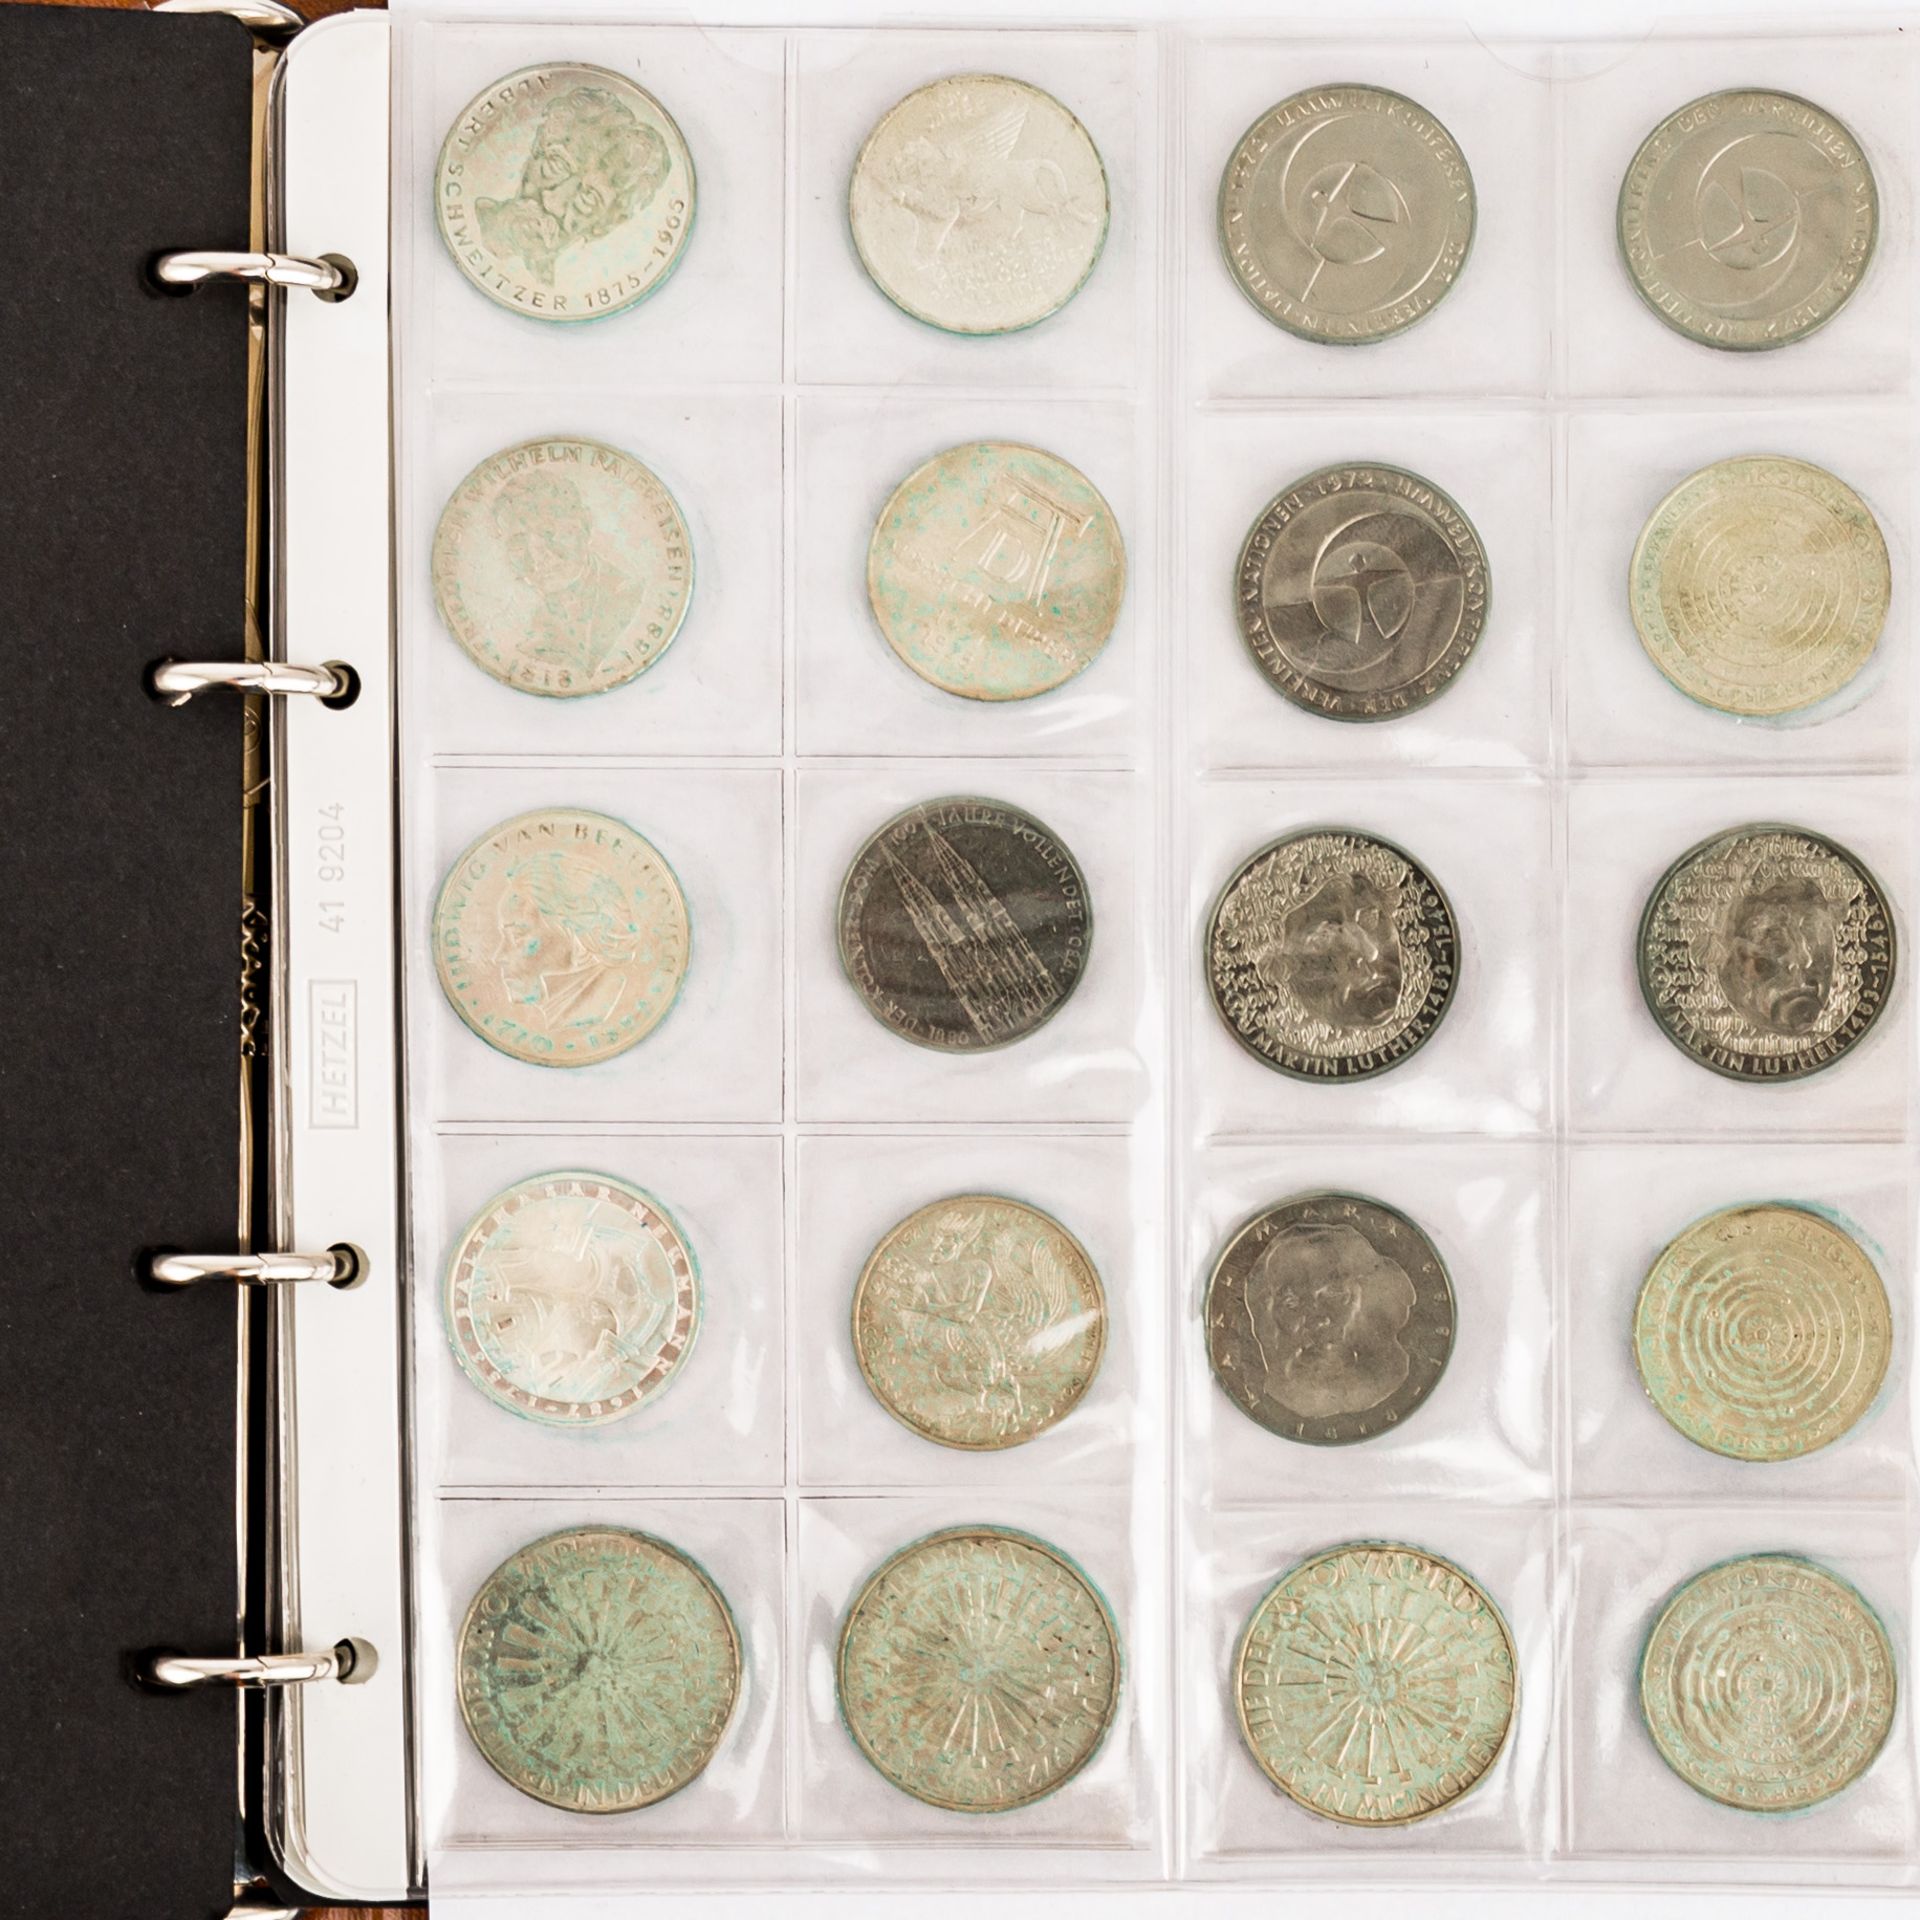 Münzen und Medaillen, BRD Gedenkmünzen,Österreich Schillinge, Medaillen 40 Jahre BRD fast nahezu 500 - Bild 9 aus 12